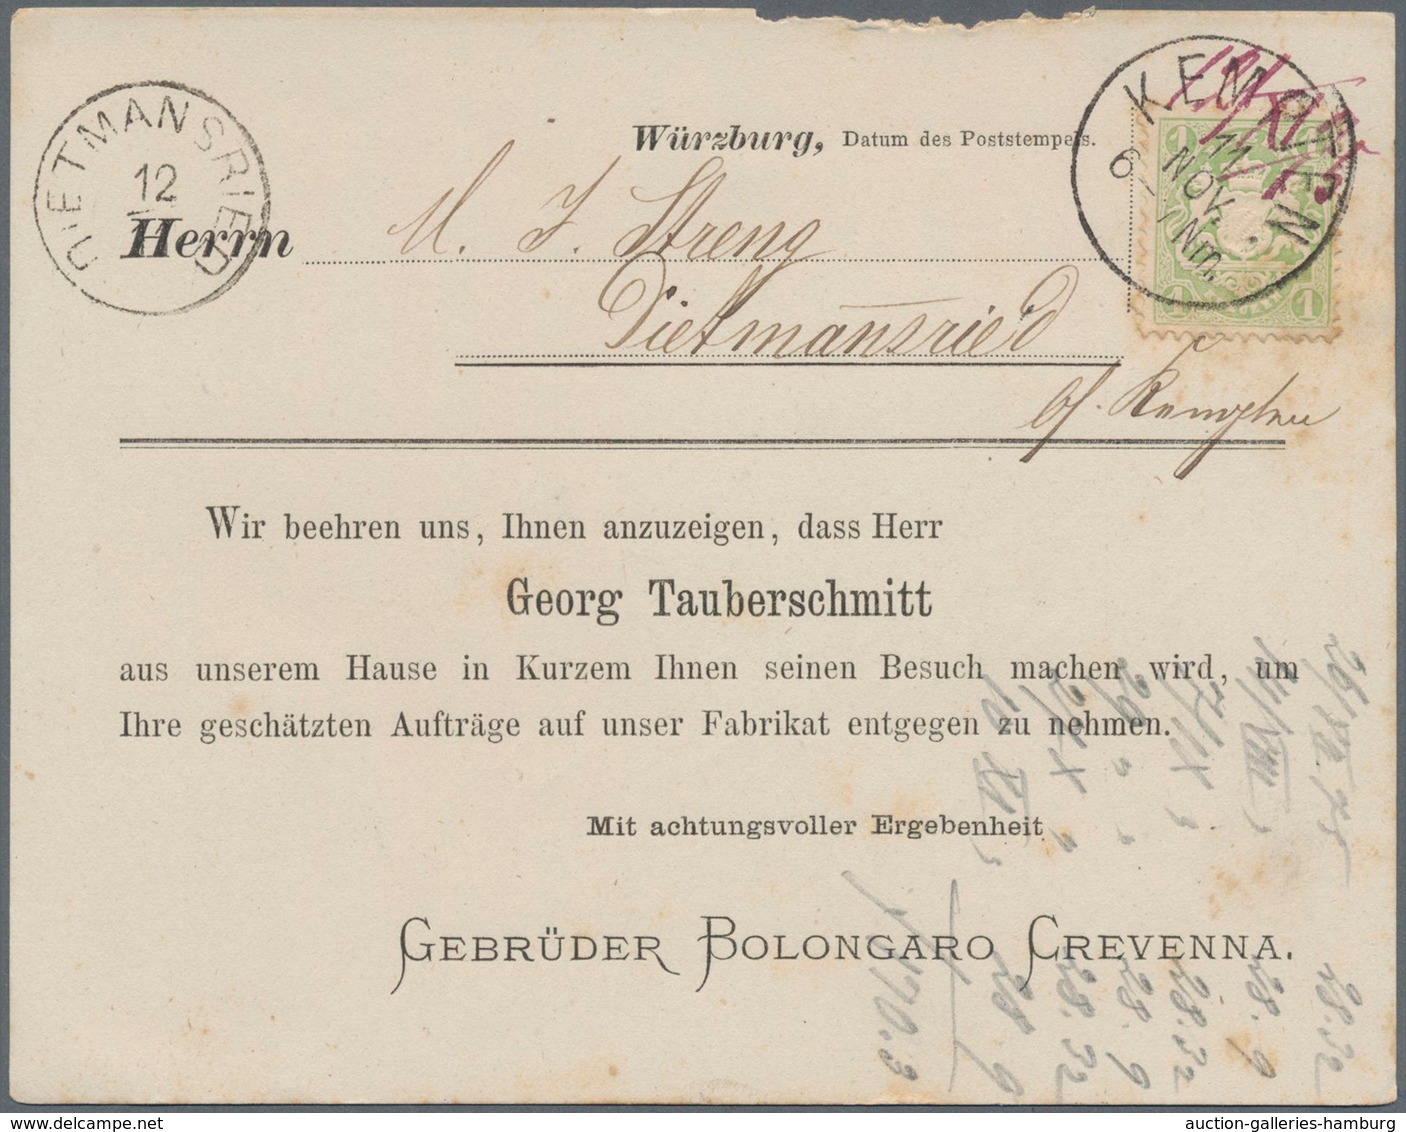 Bayern - Ortsstempel: KEMPTEN: 1869, 4 interessante Drucksachen aus Kempten mit 4 verschiedenen Stem